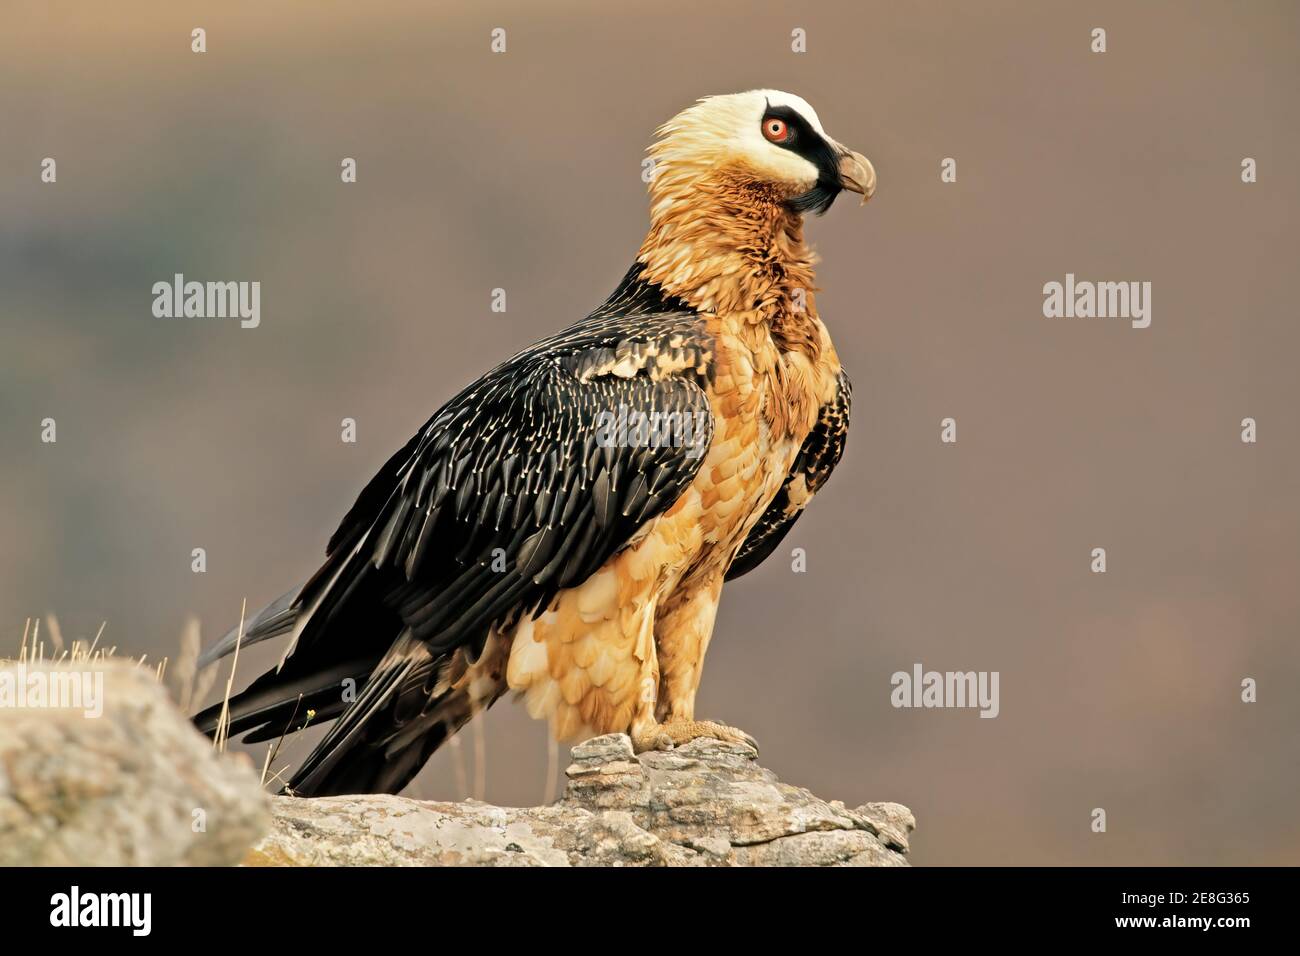 Un vautour barbu en voie de disparition (Gypaetus barbatus) perché sur un rocher, en Afrique du Sud Banque D'Images